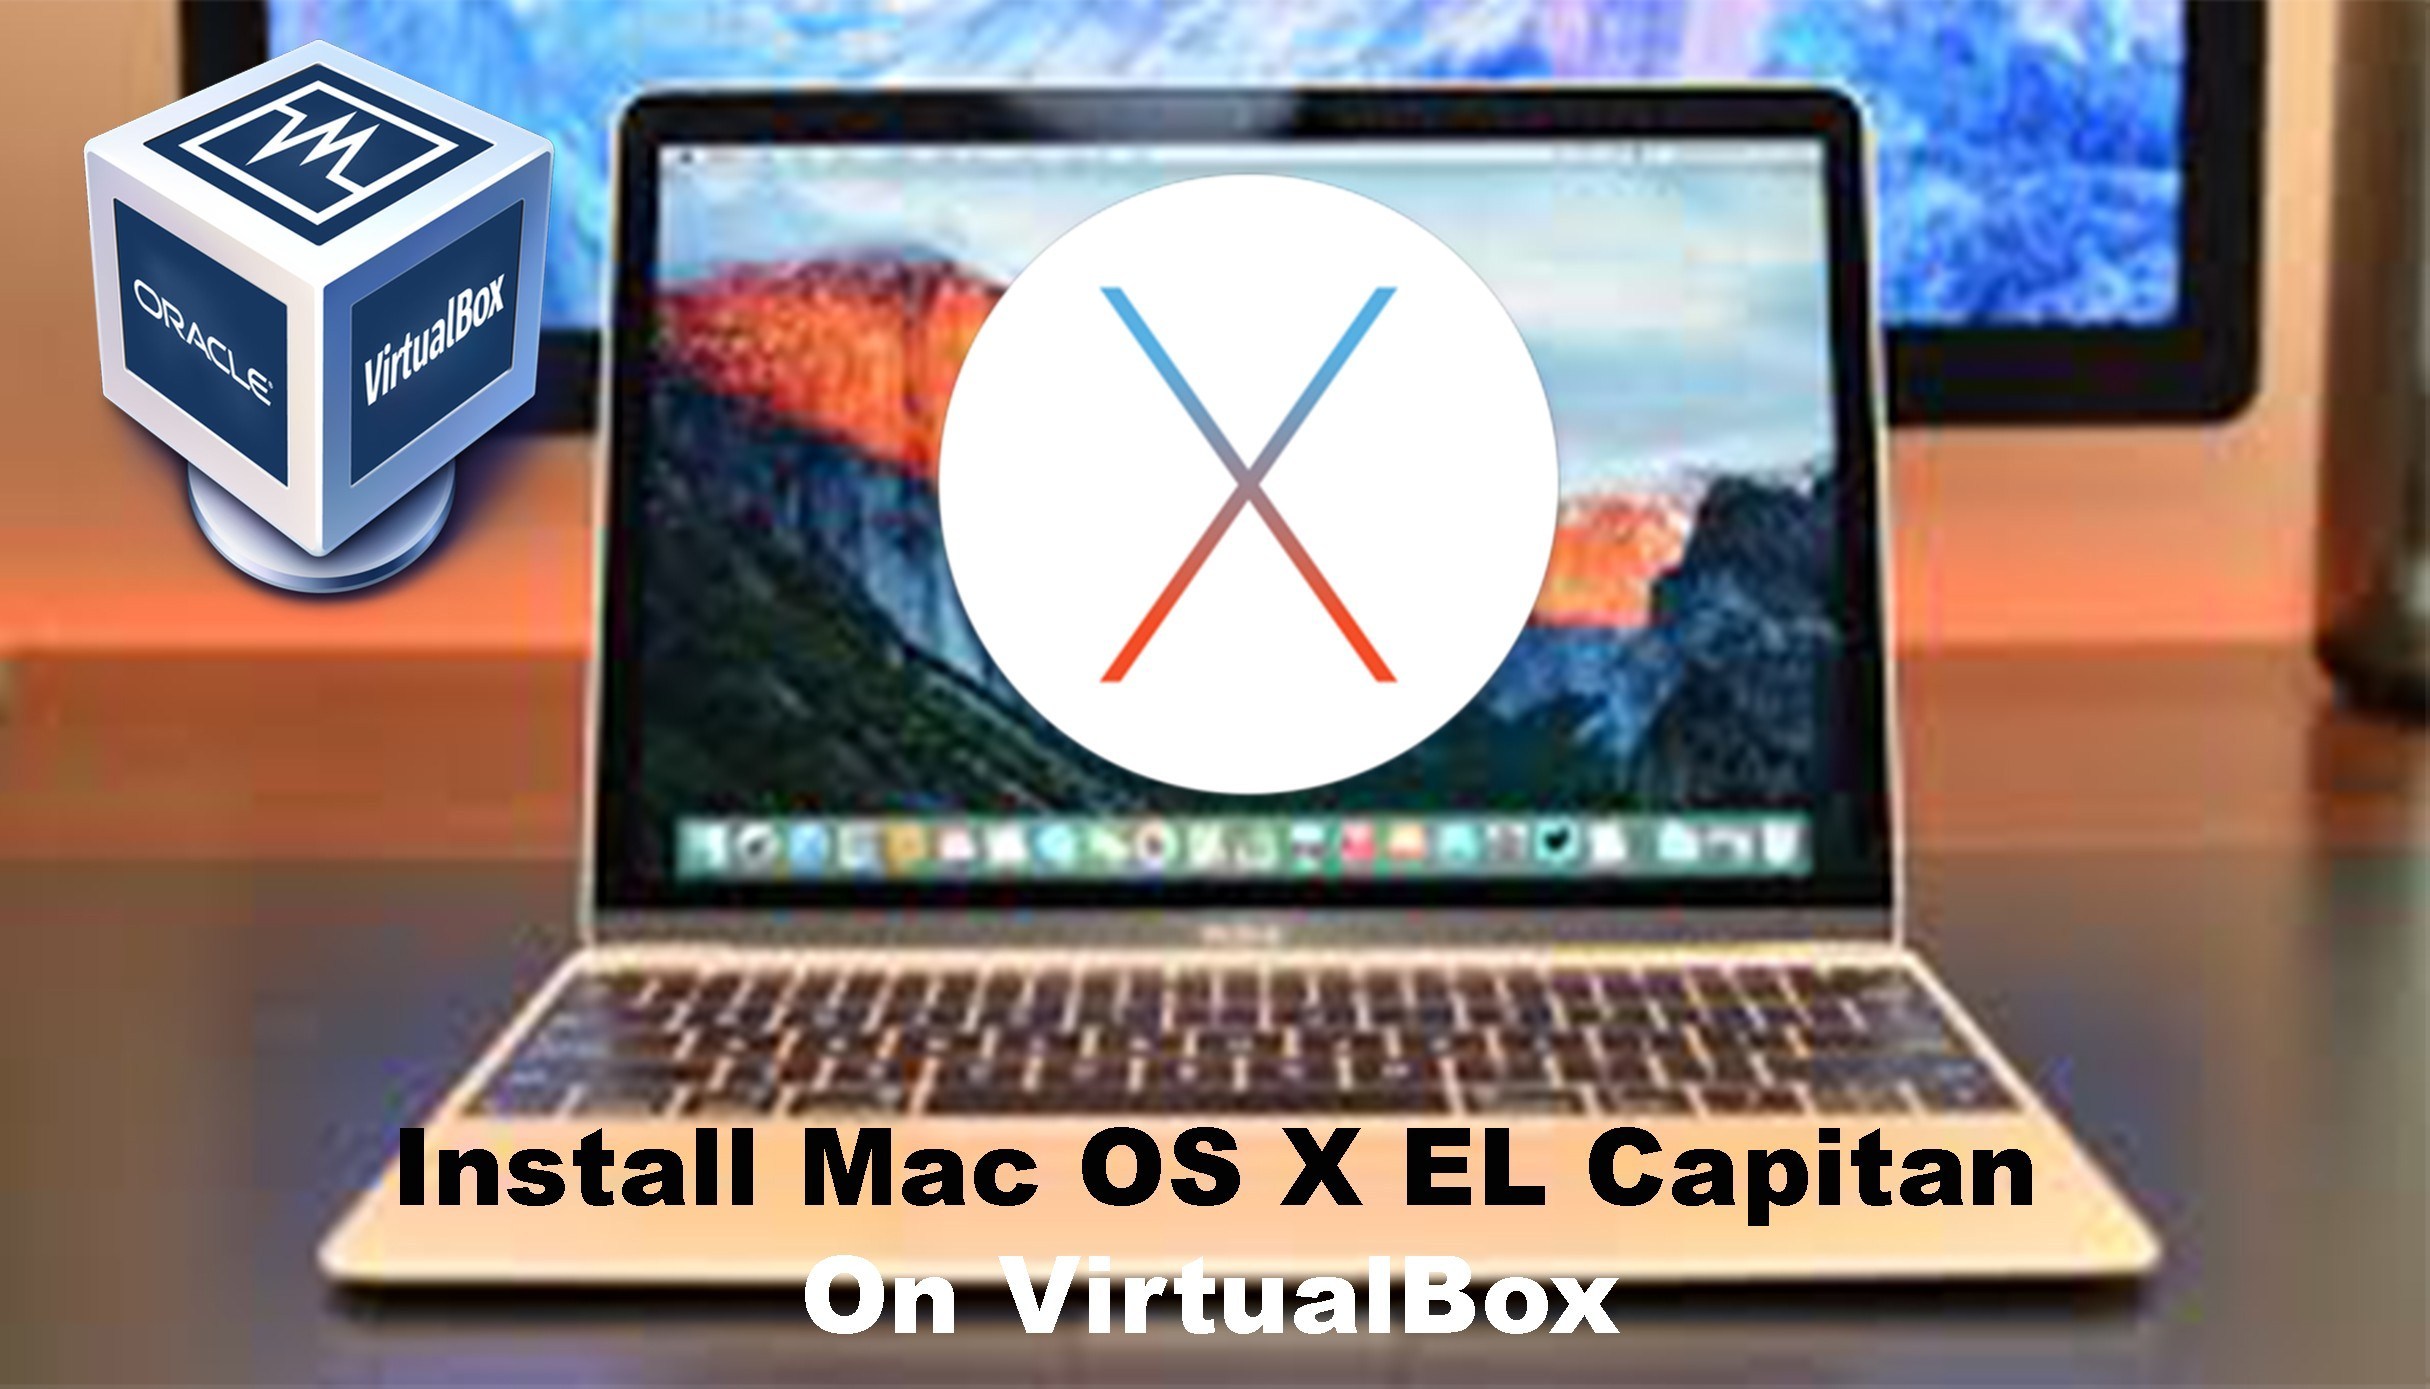 Download virtualbox for mac os x el capitan